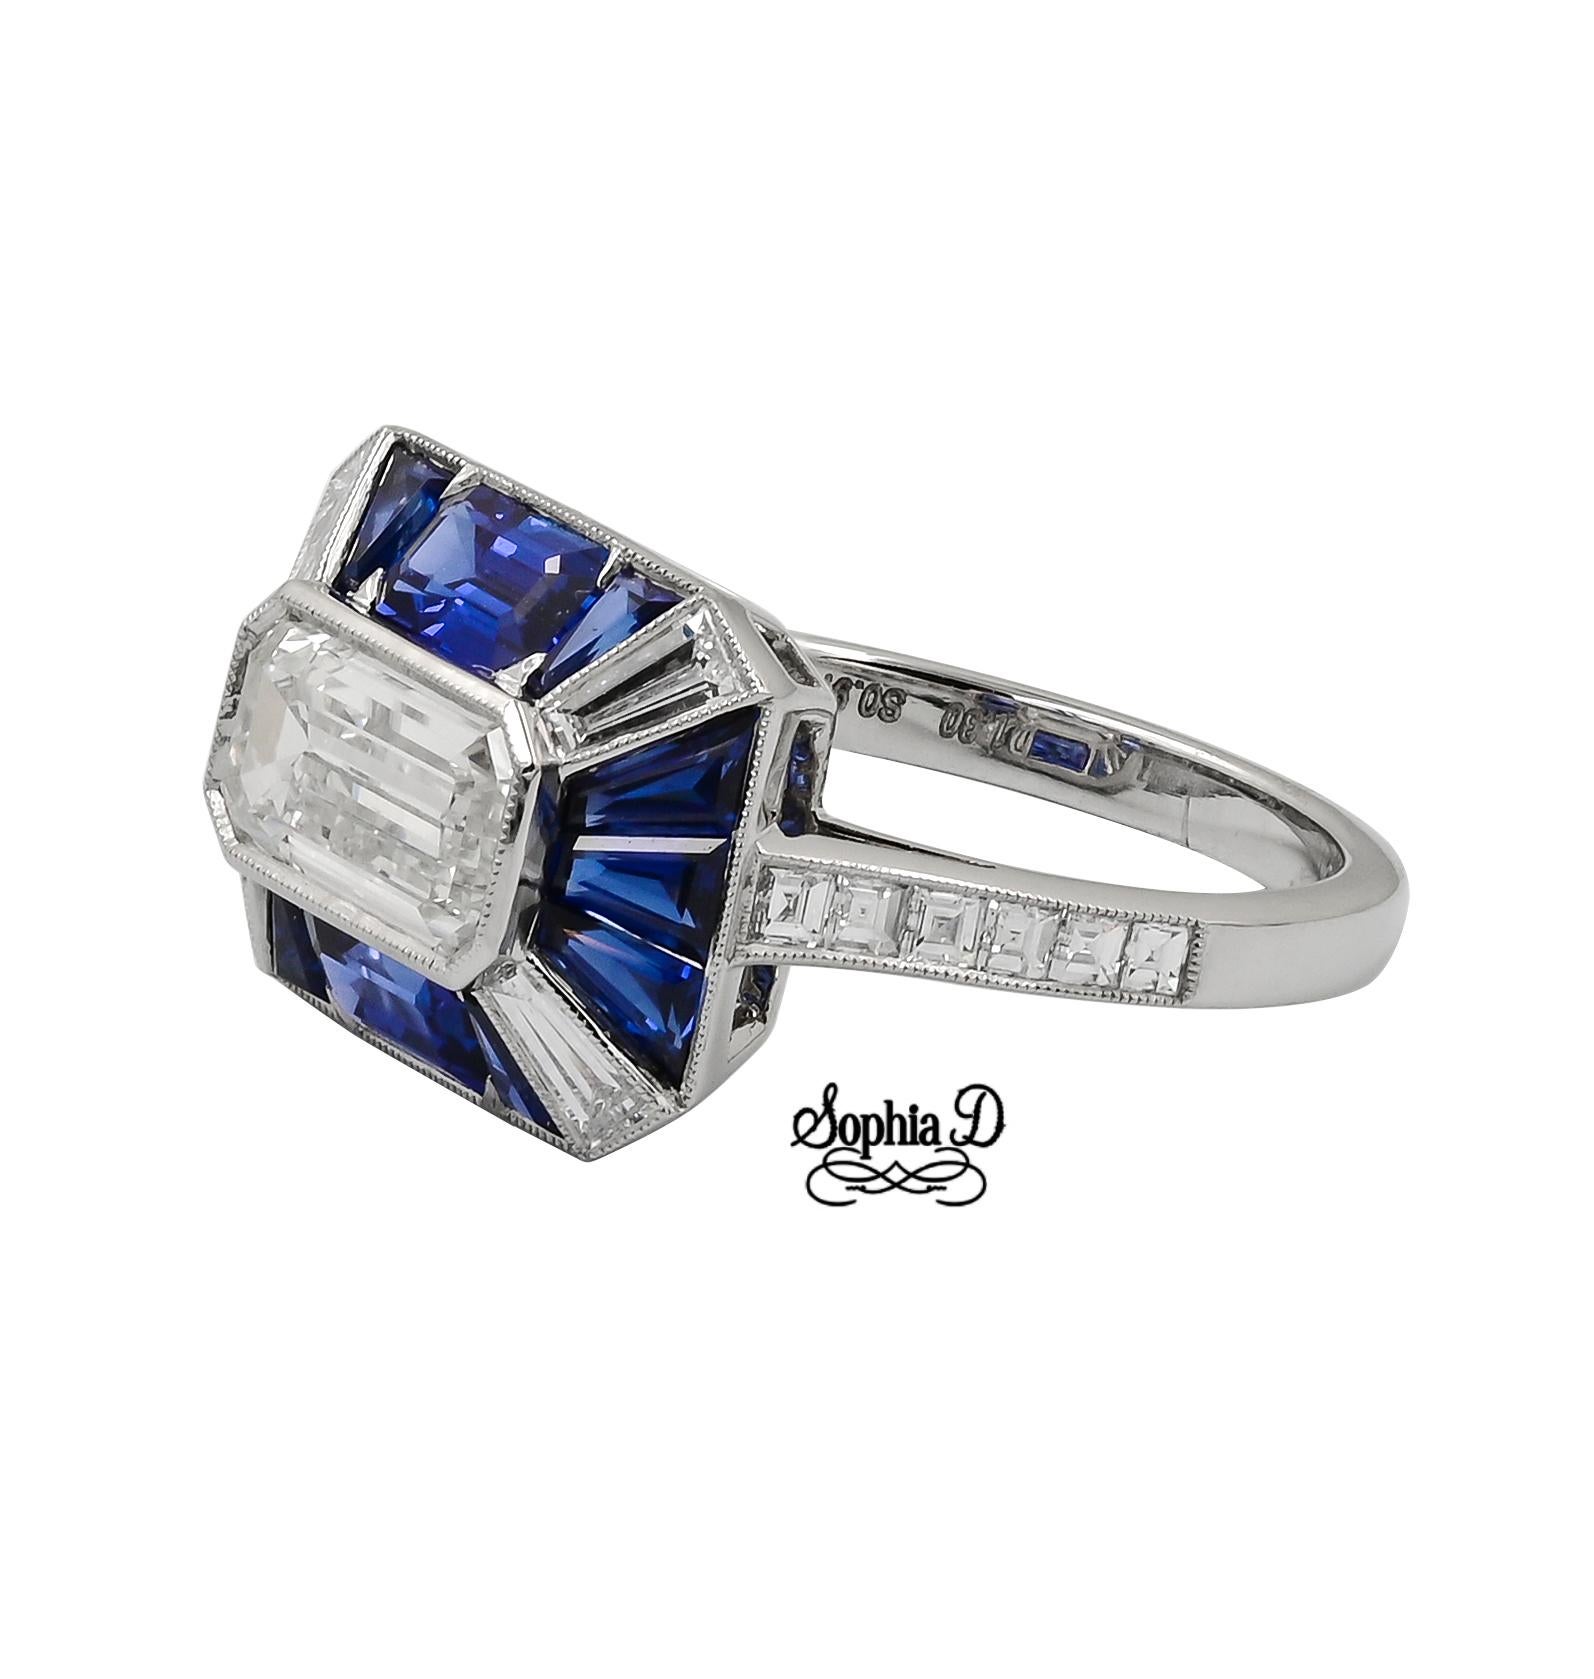 Baguette Cut Sophia D. 1.30 Carat Diamond Art Deco Style Platinum Ring  For Sale